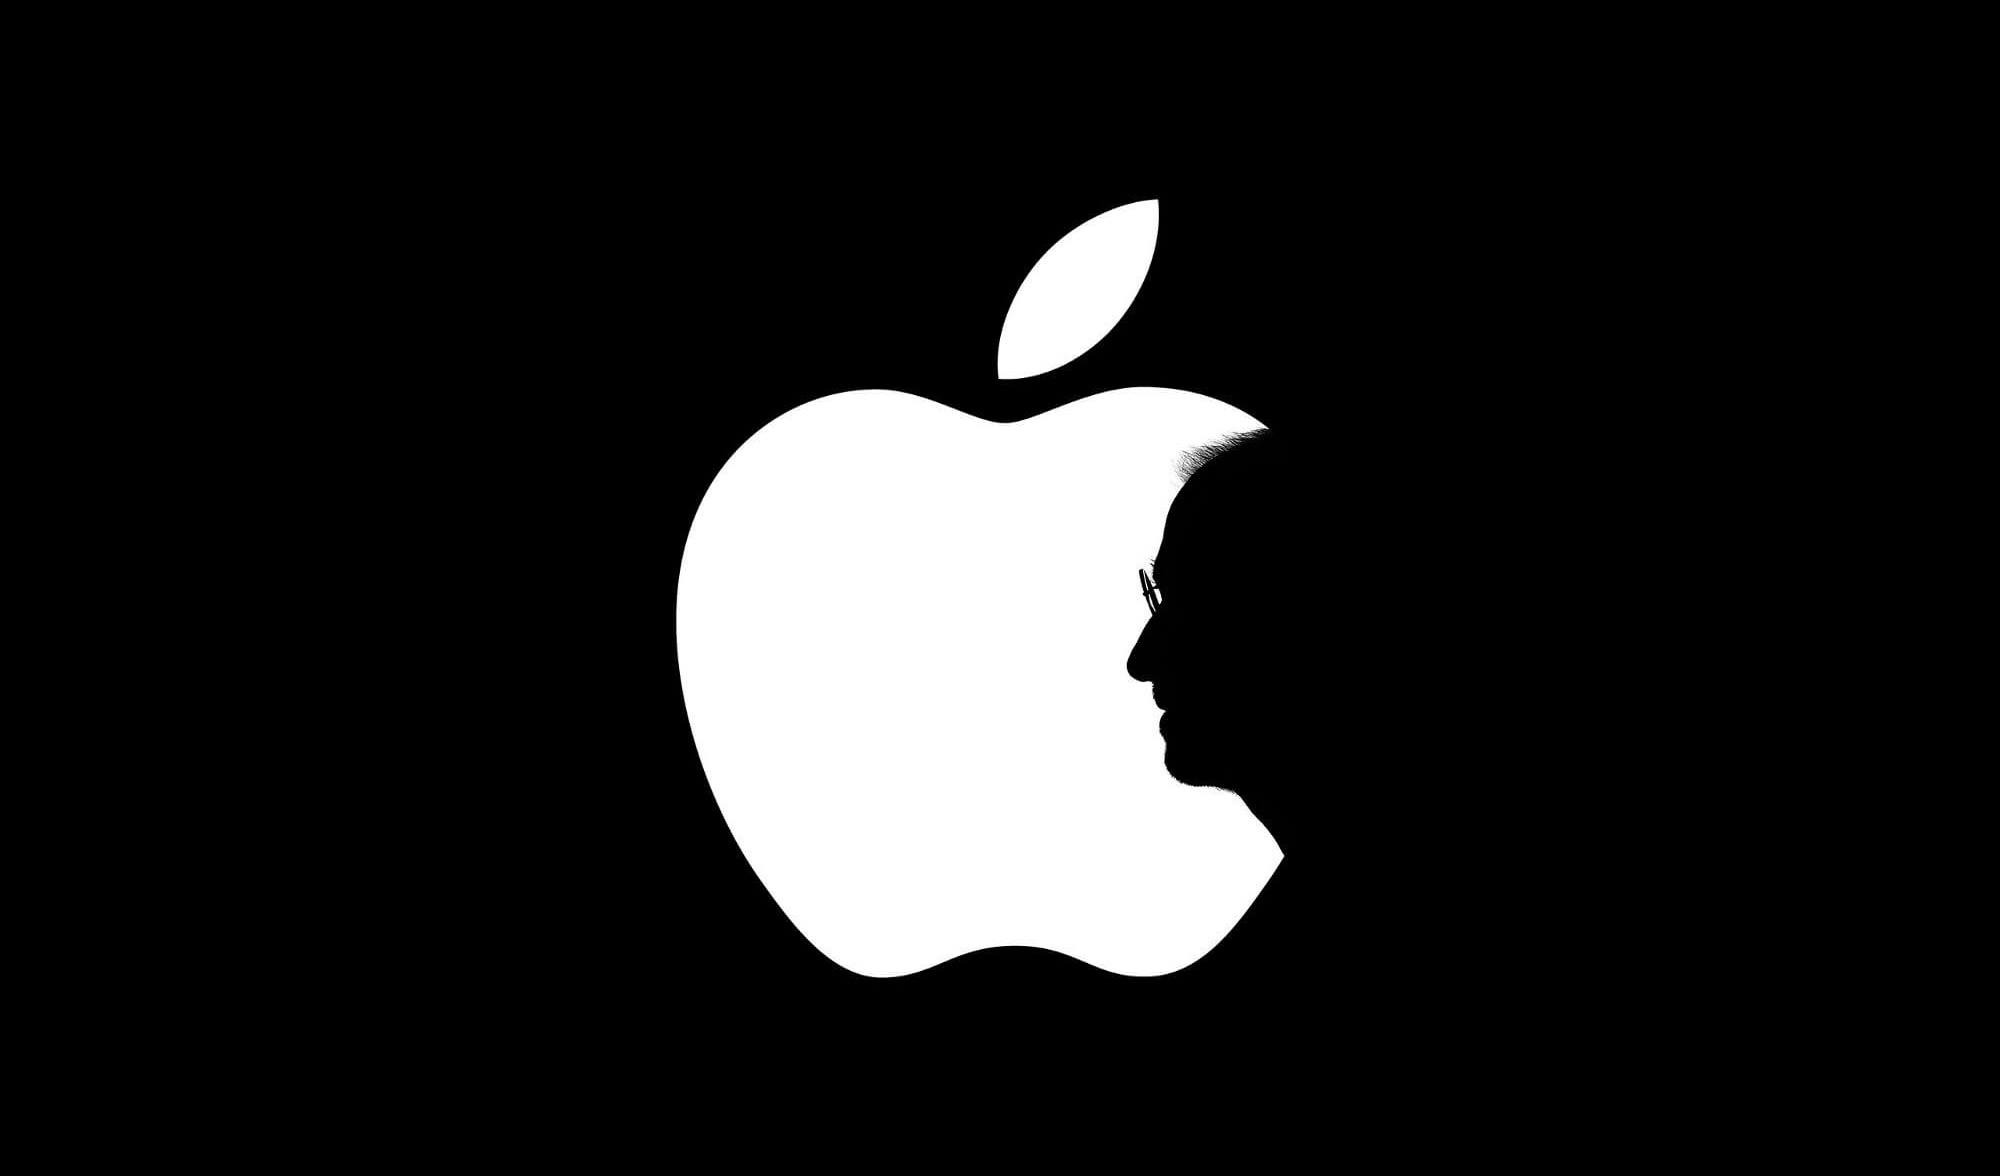 اپل ارزشمندترین شرکت جهان شد